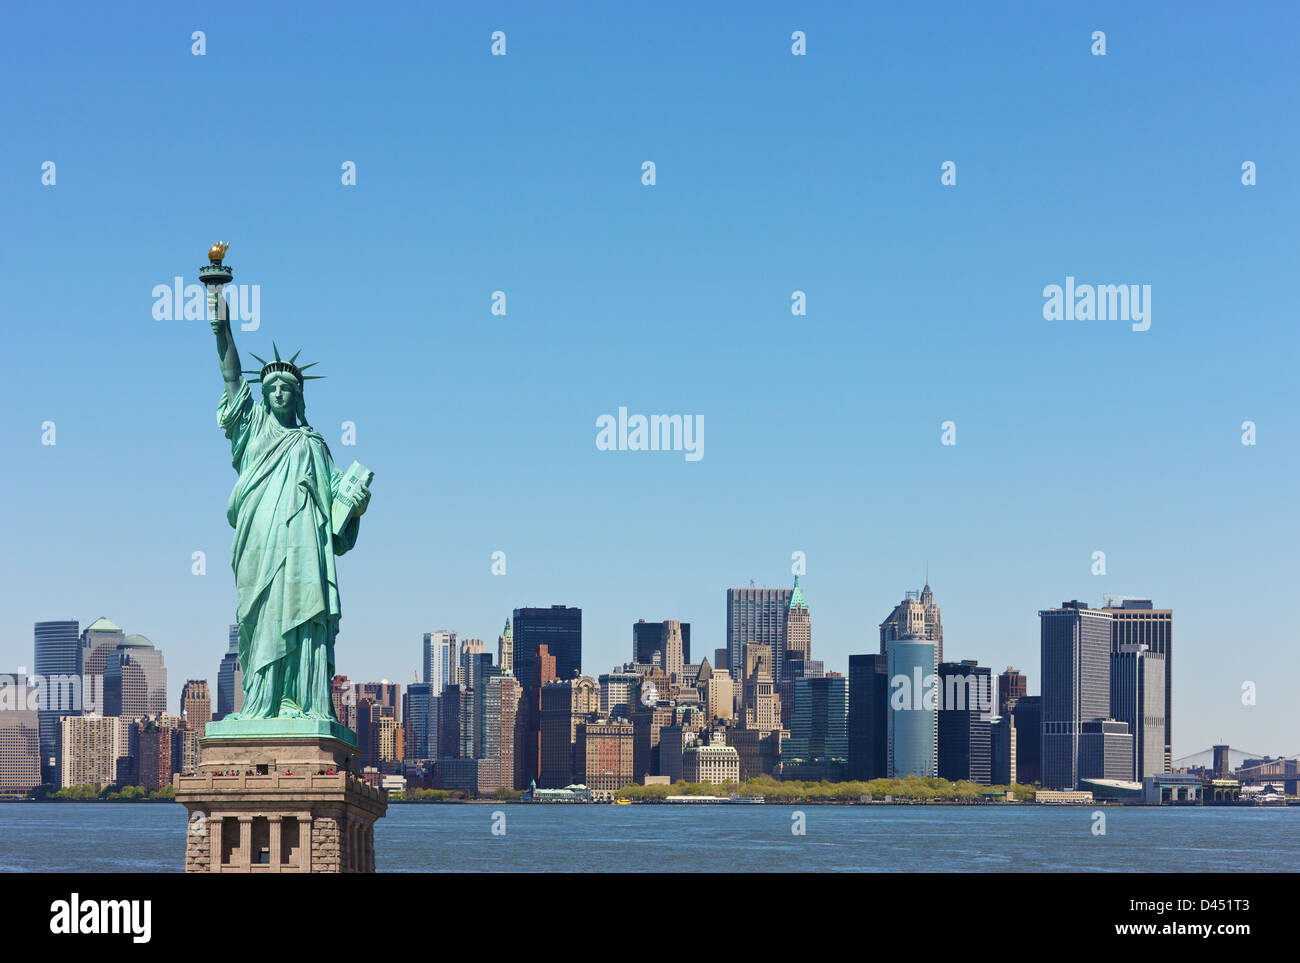 El horizonte de la ciudad de Nueva York con la estatua de la libertad, Estados Unidos Foto de stock